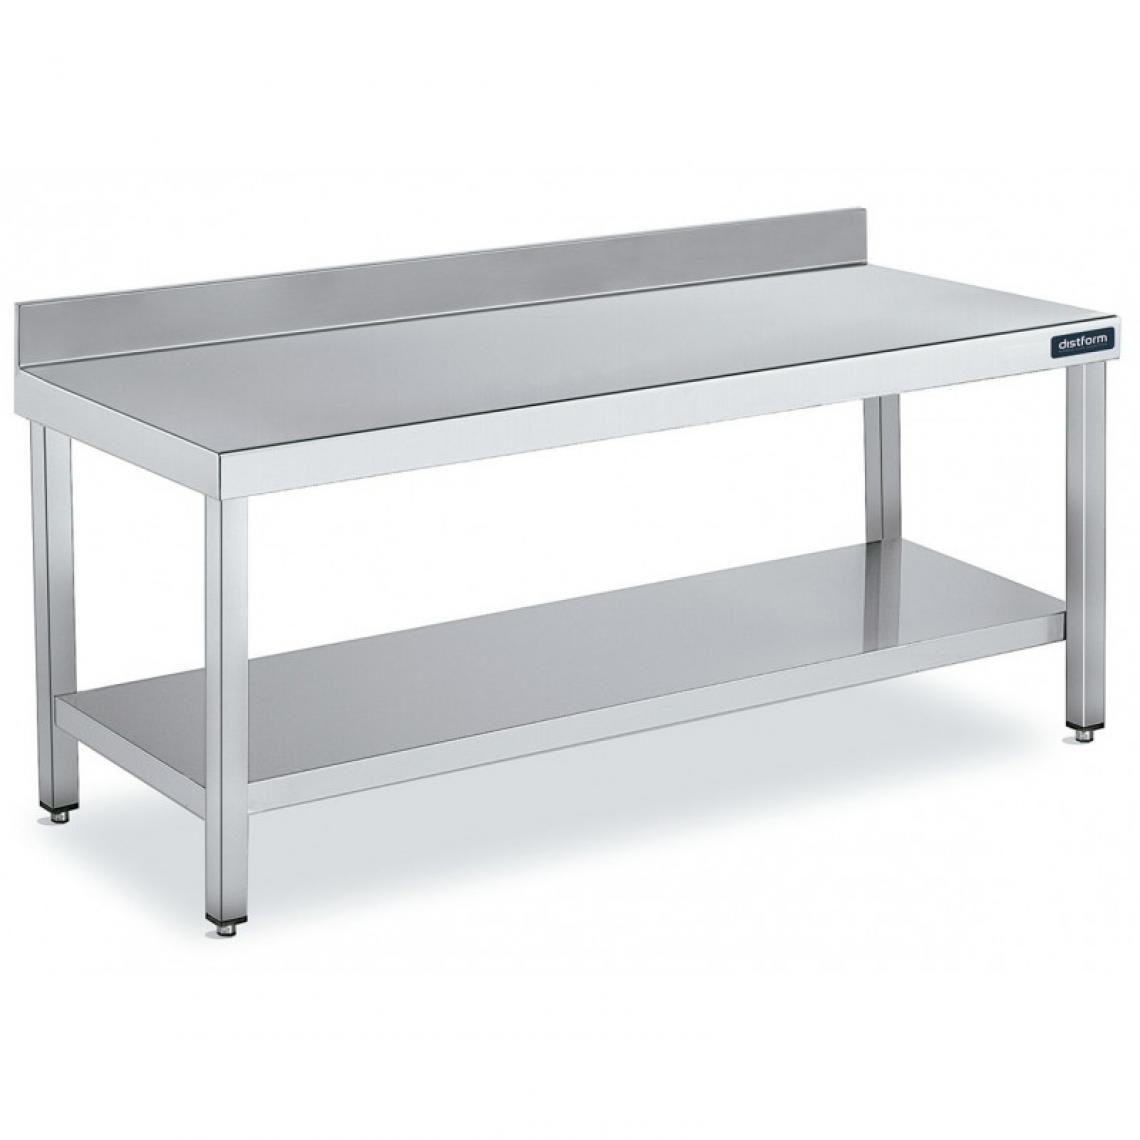 DISTFORM - Table Adossée en Inox avec 1 étagère Profondeur 700 mm - Distform - Acier inoxydable1000x700 - Tables à manger